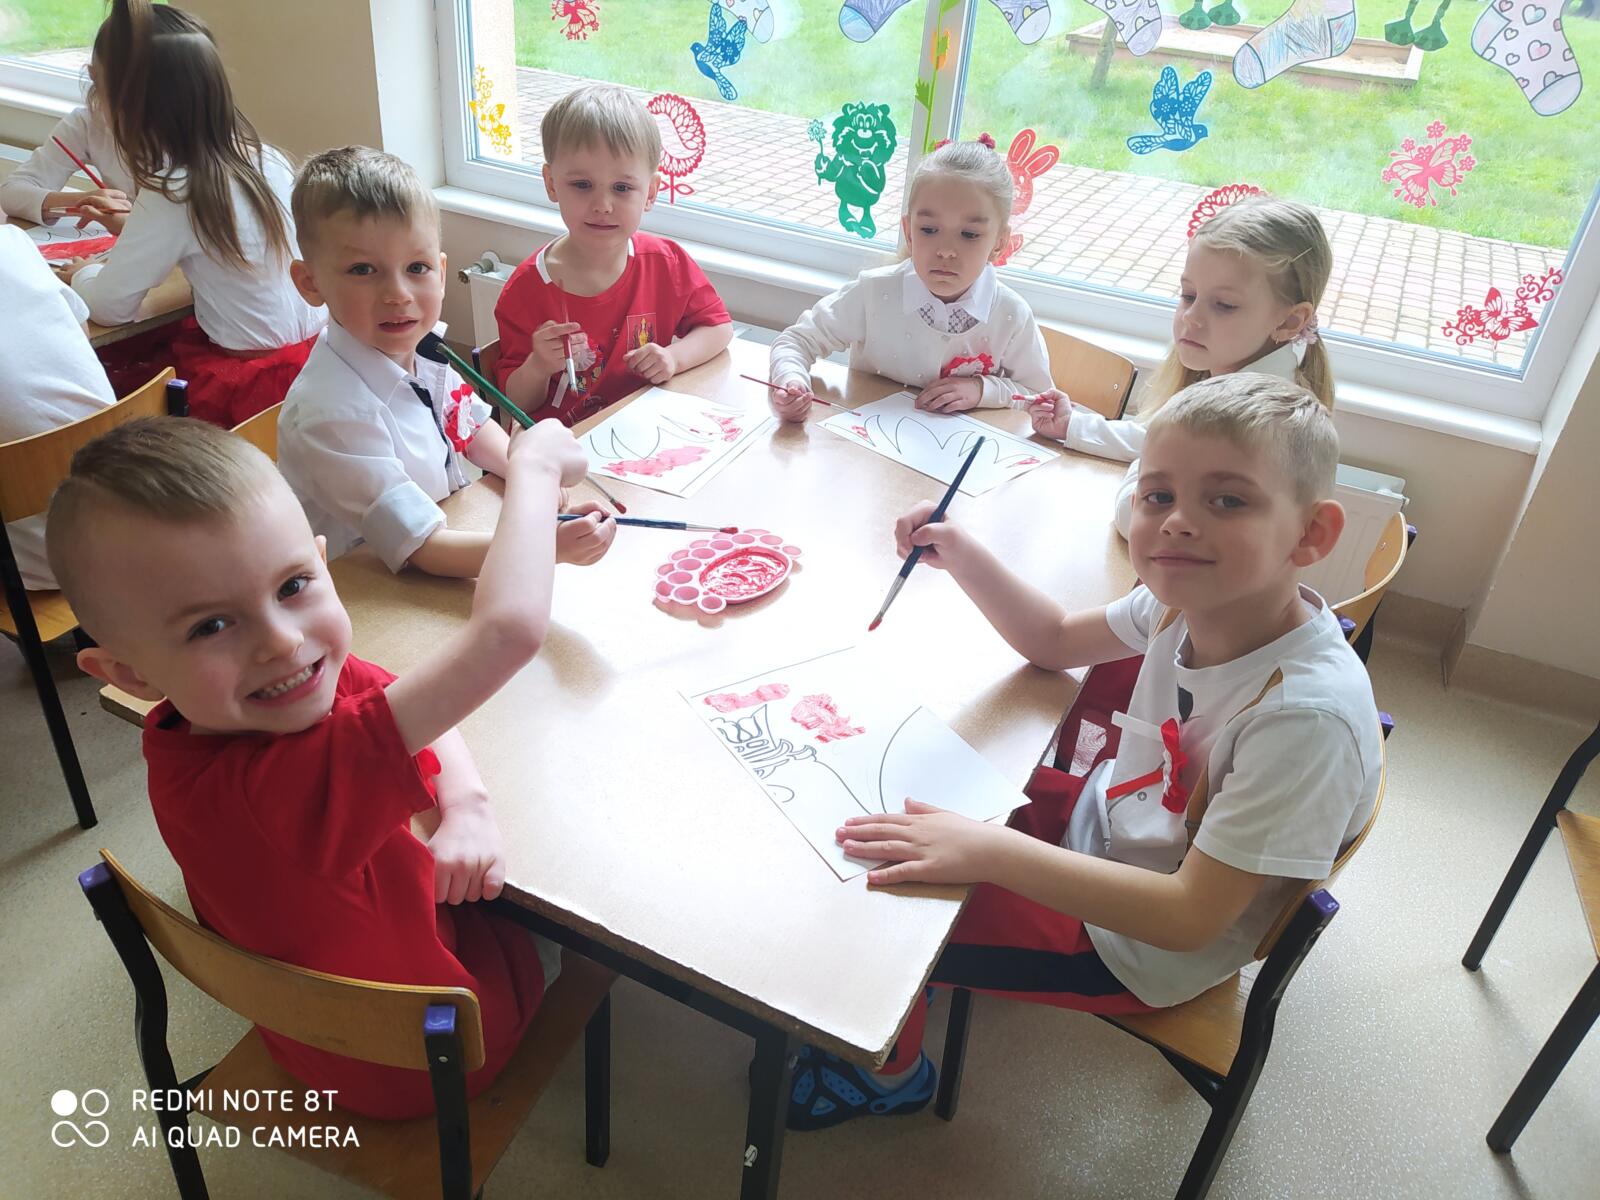 Zdjęcie przedstawia sześcioro dzieci, które pracują przy stolikach w parach. Dzieci zamalowują odpowiednie pole na kartce na czerwono do wspólnej grupowej pracy - godła Polski.